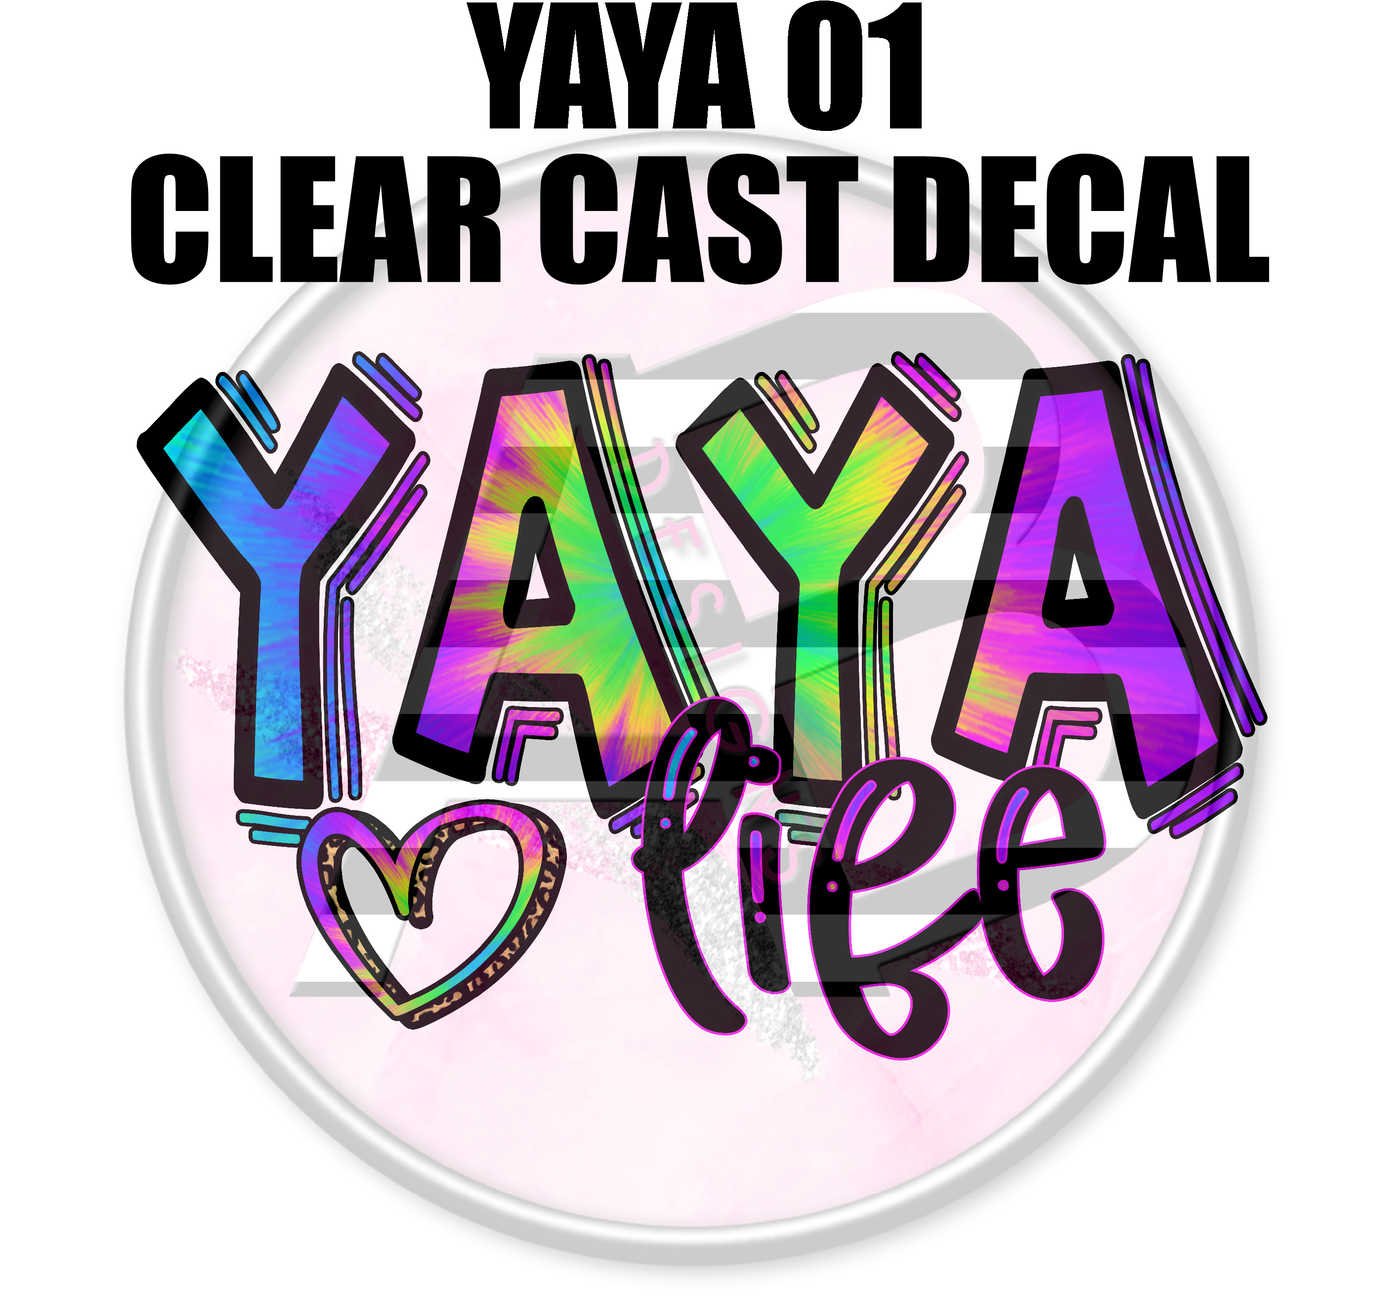 Yaya 01 - Clear Cast Decal